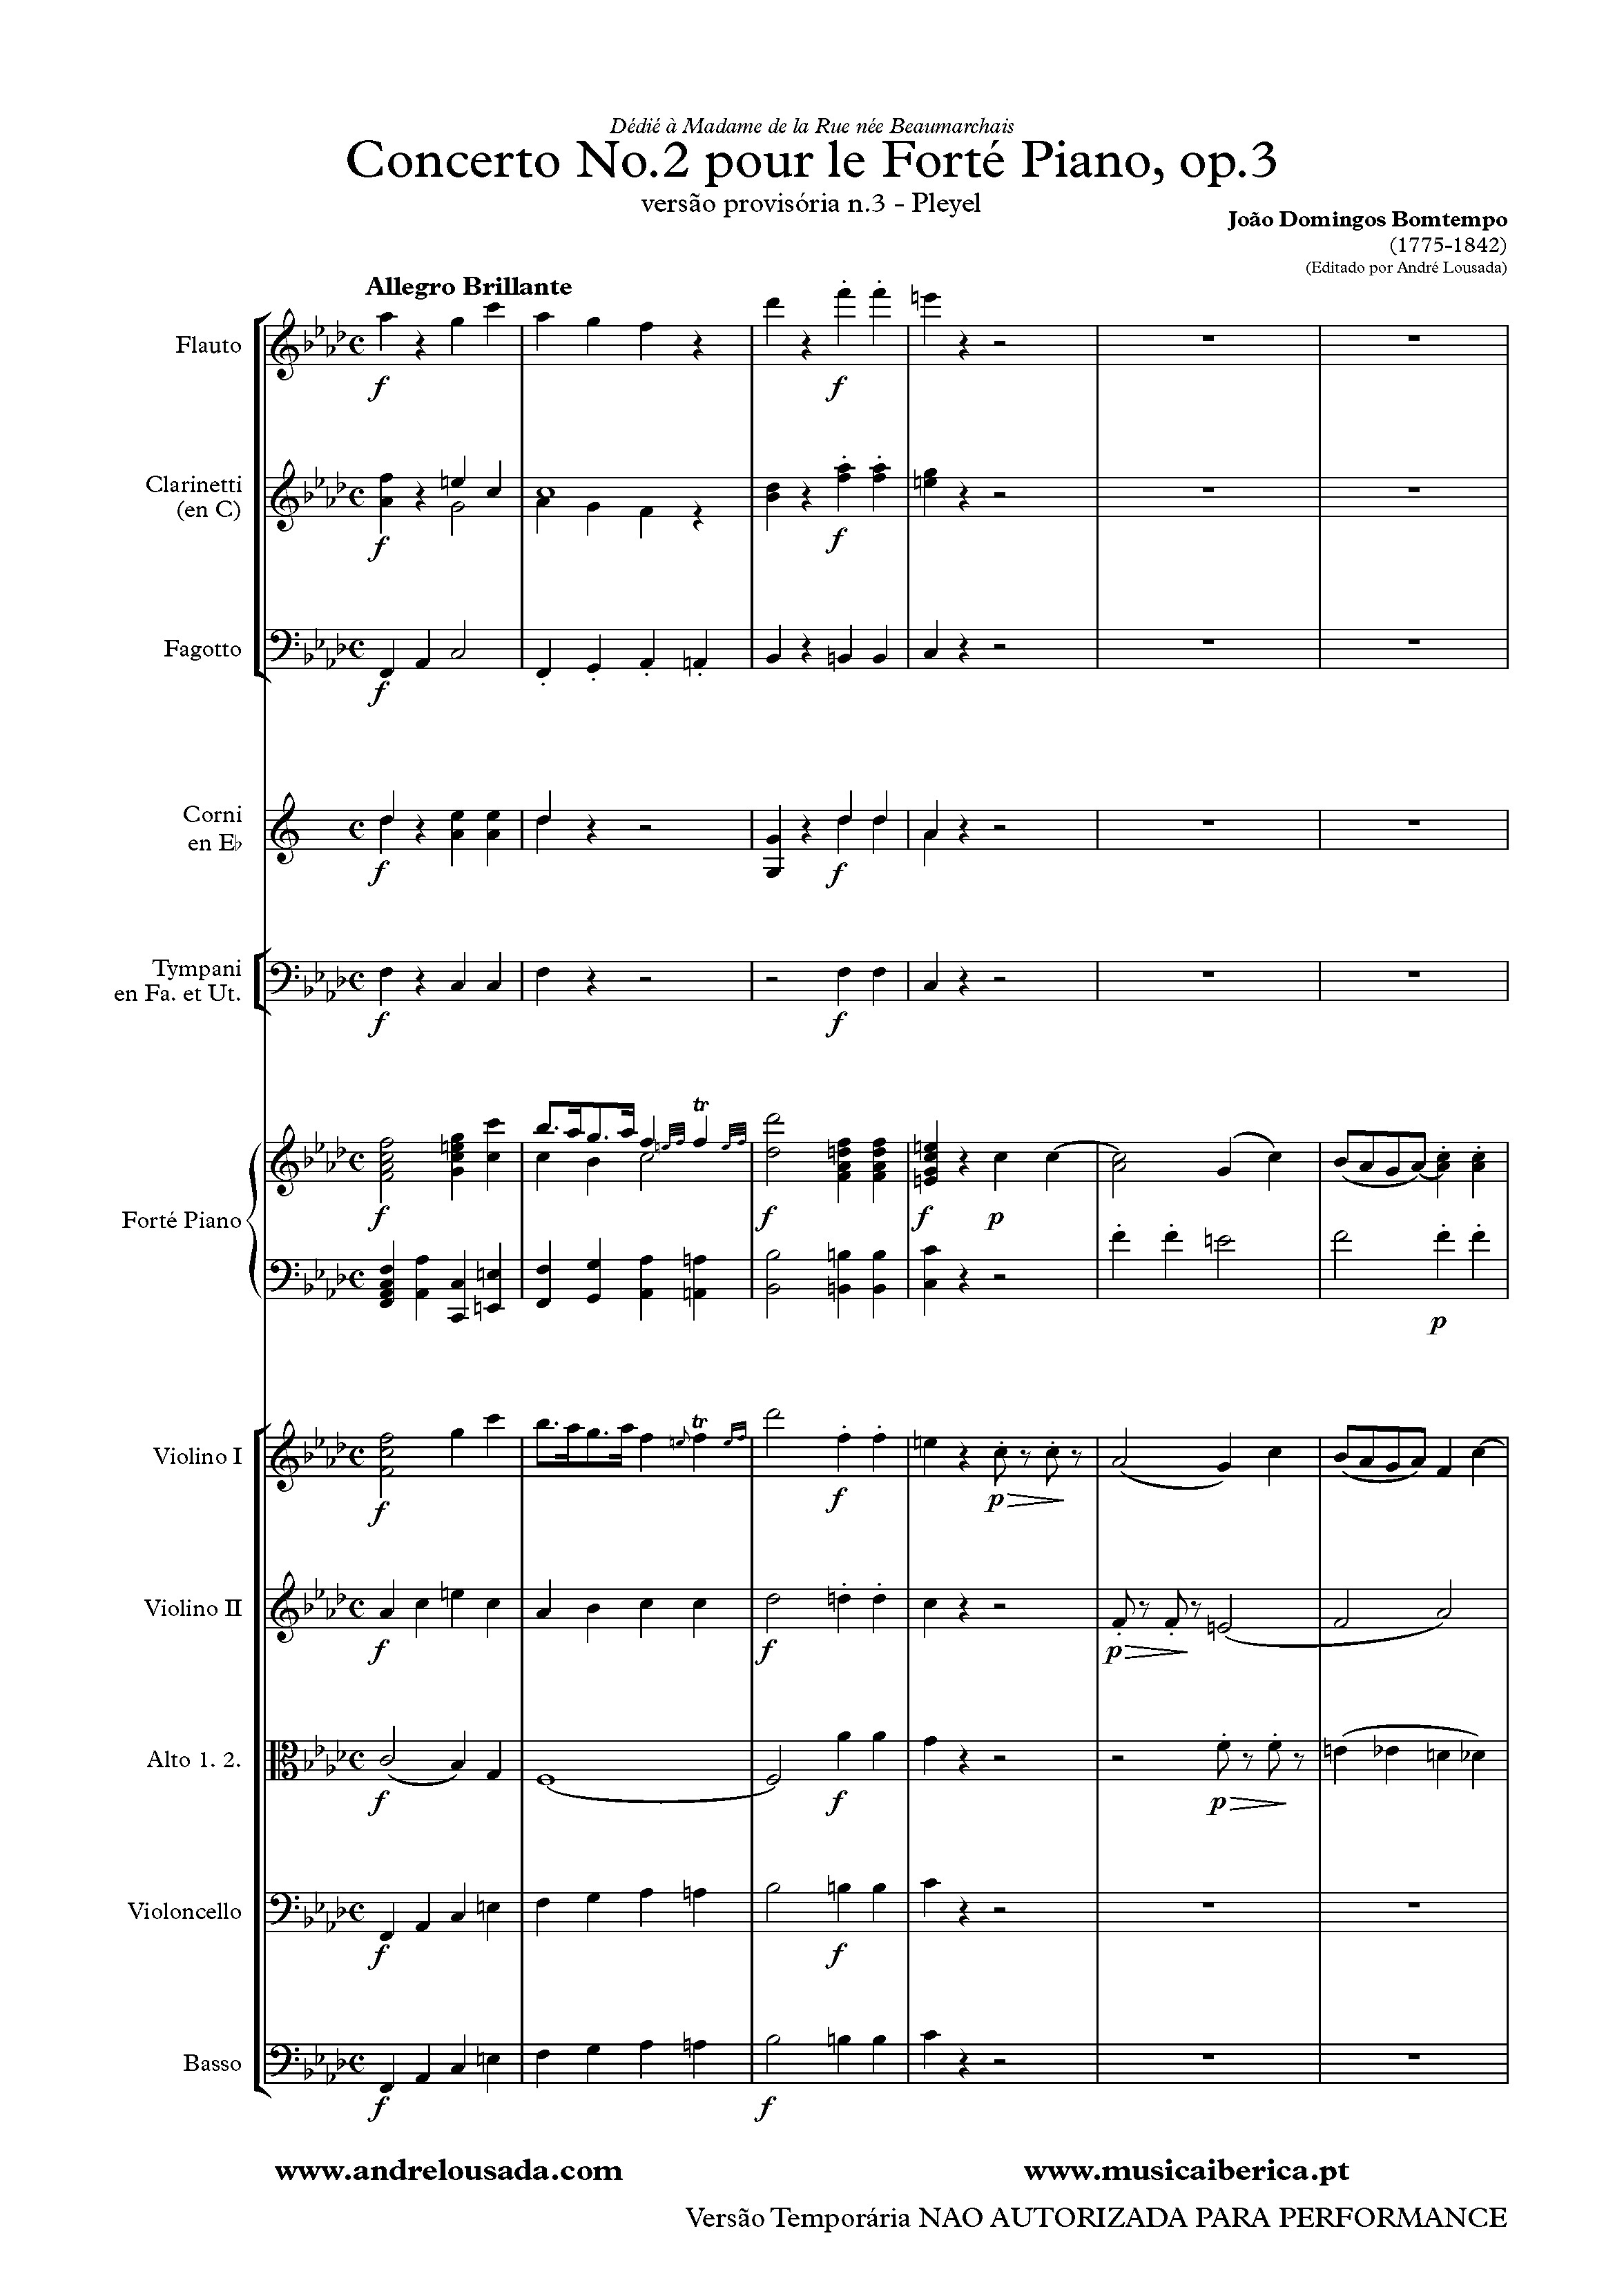 Bomtempo - Concerto No2 (Pleyel)_0001.png